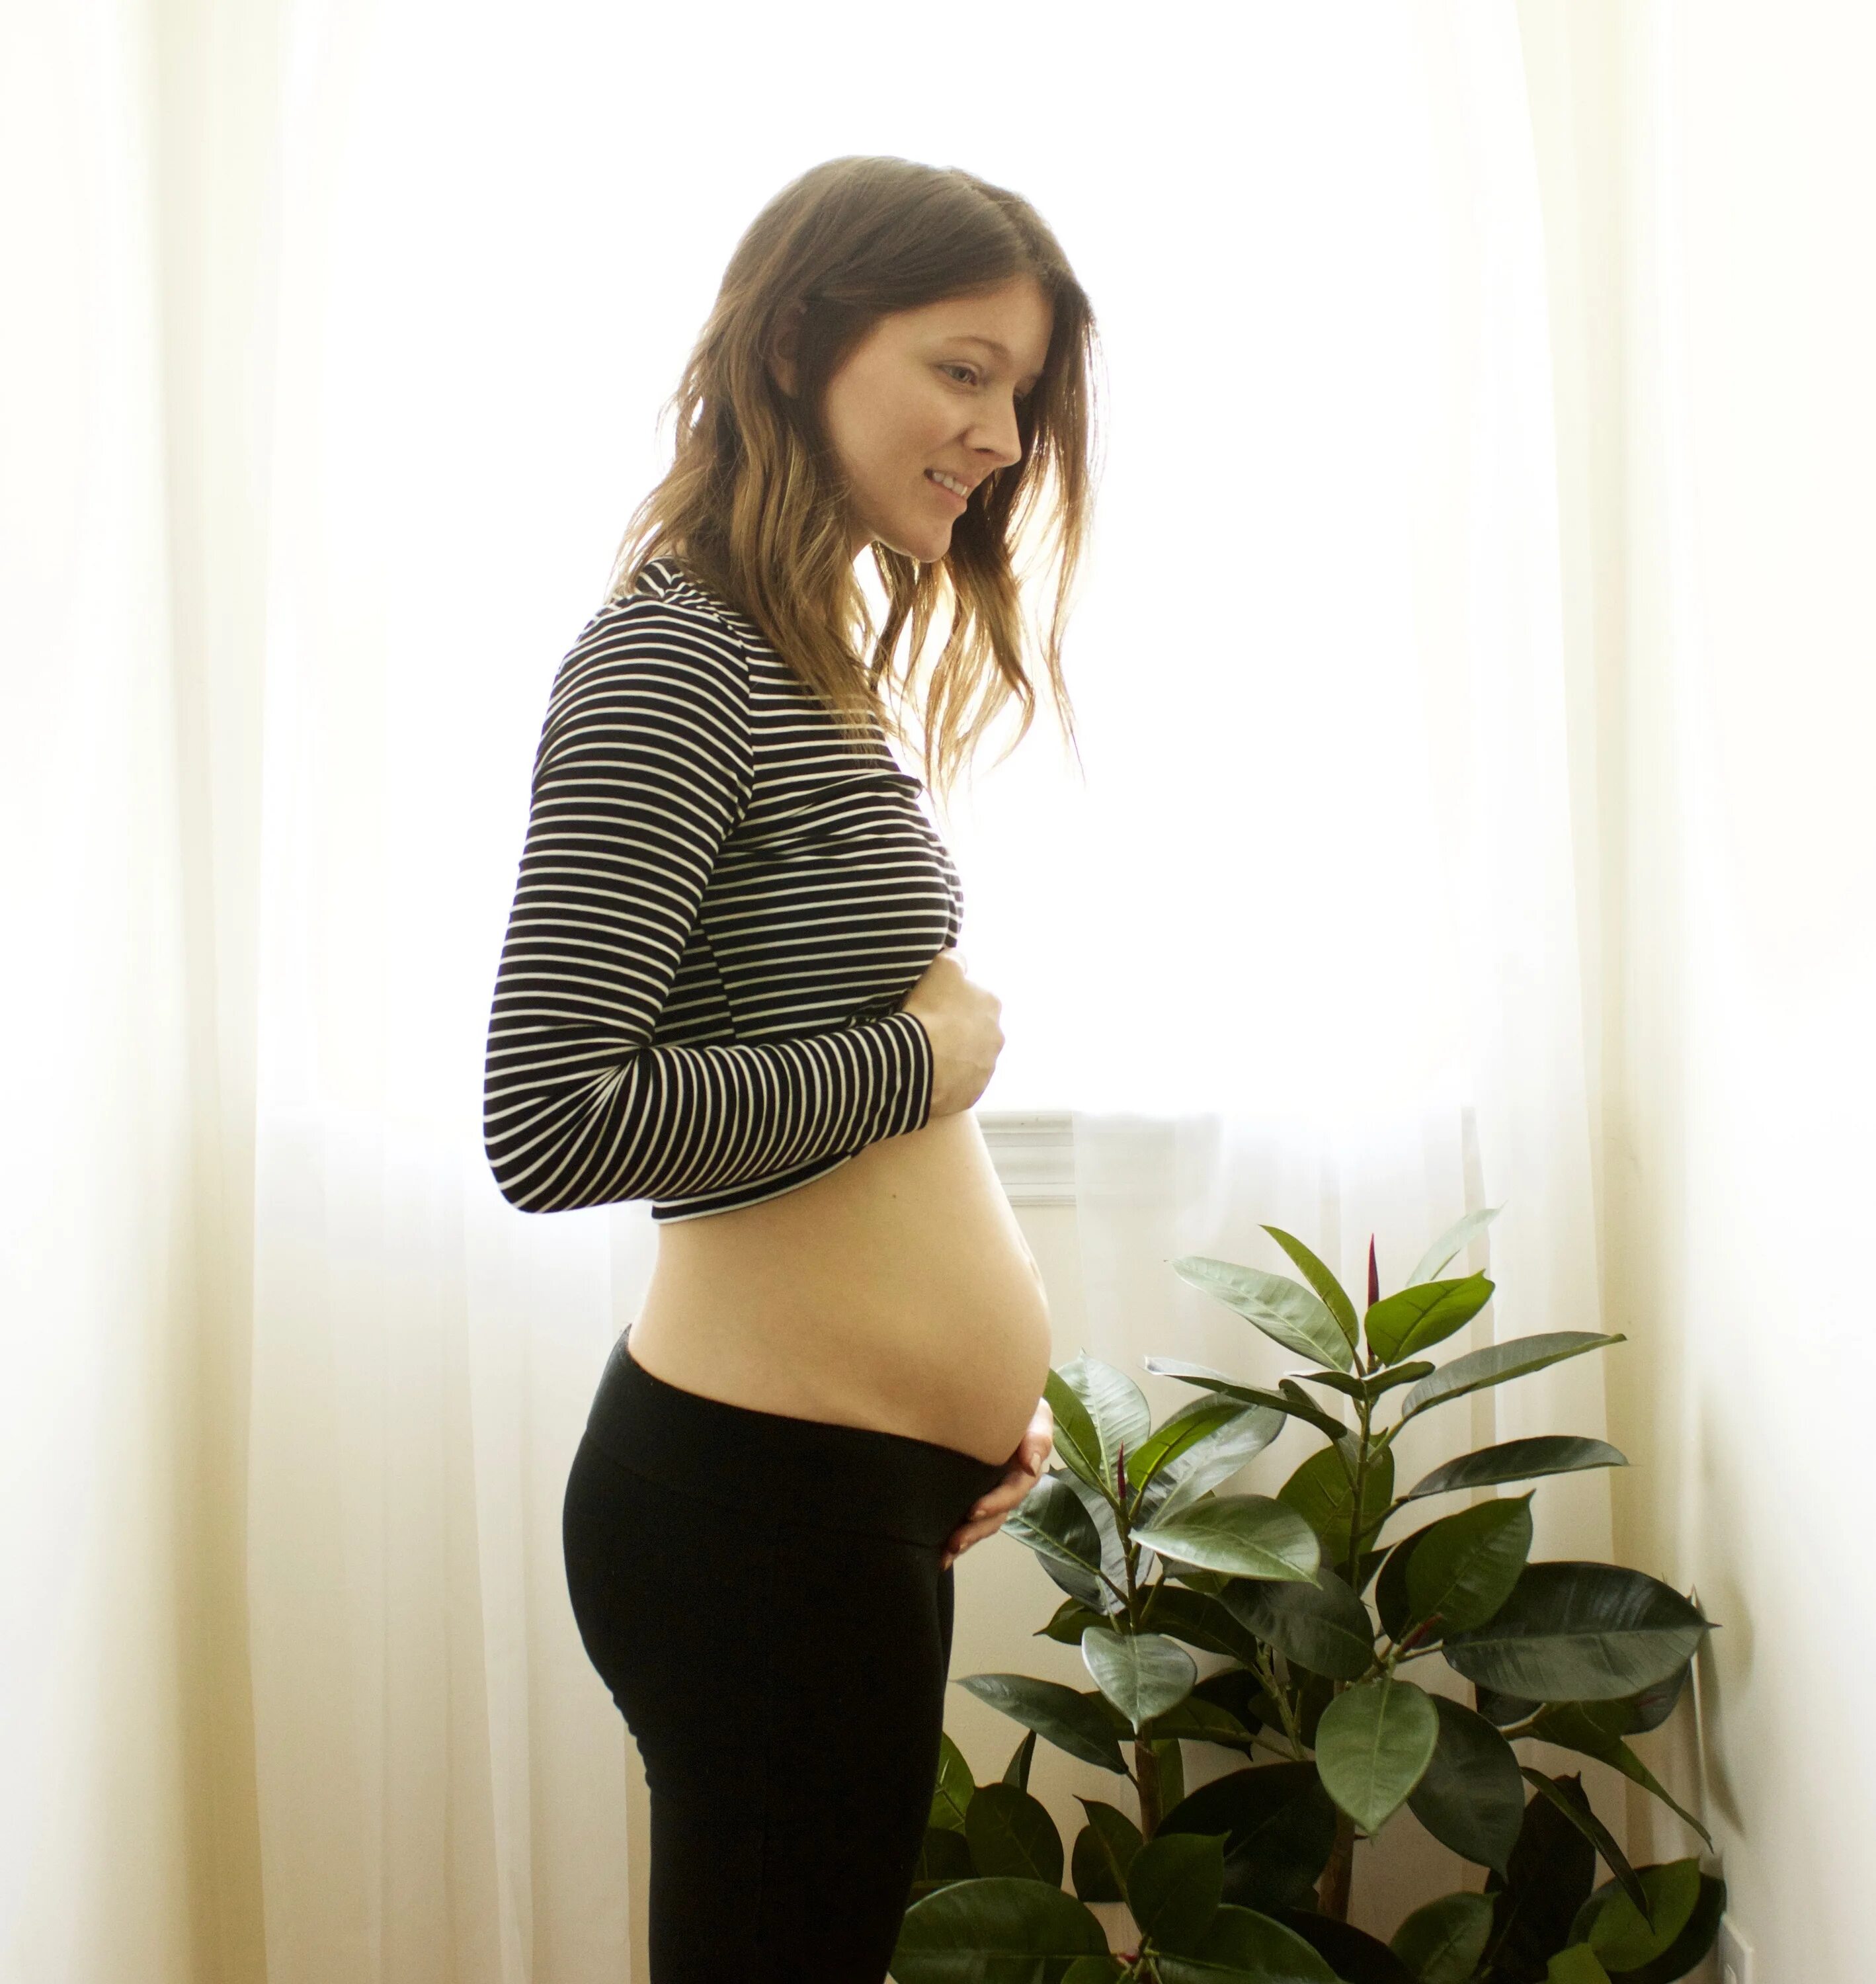 Pregnant belly 16 weeks. Pregnant 12 weeks. 3 Месяц беременности.